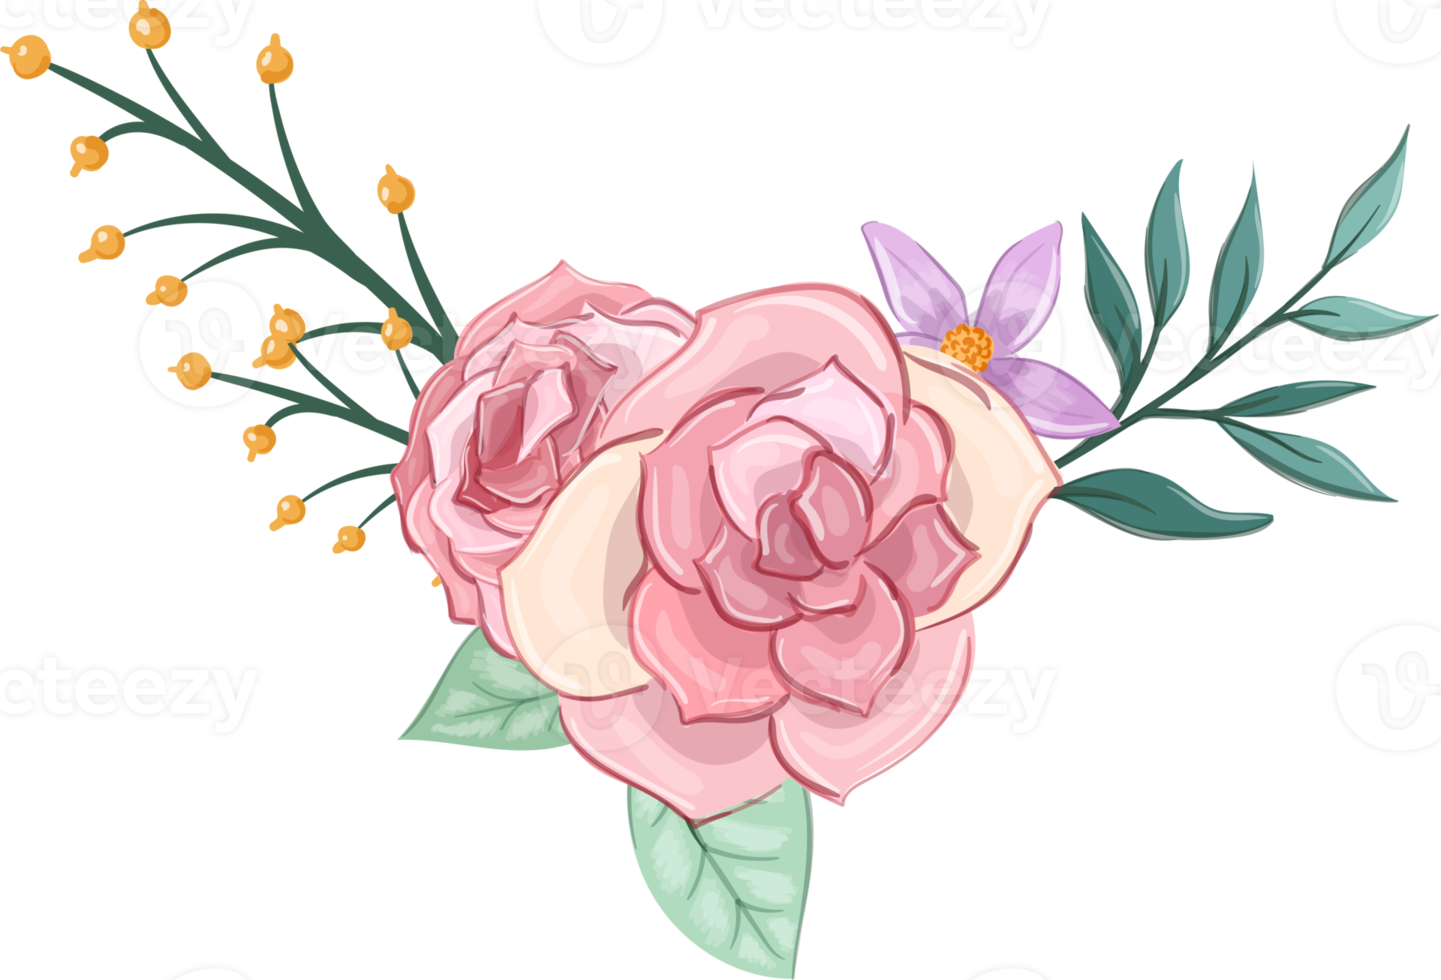 roze bloem arrangement met waterverf stijl png